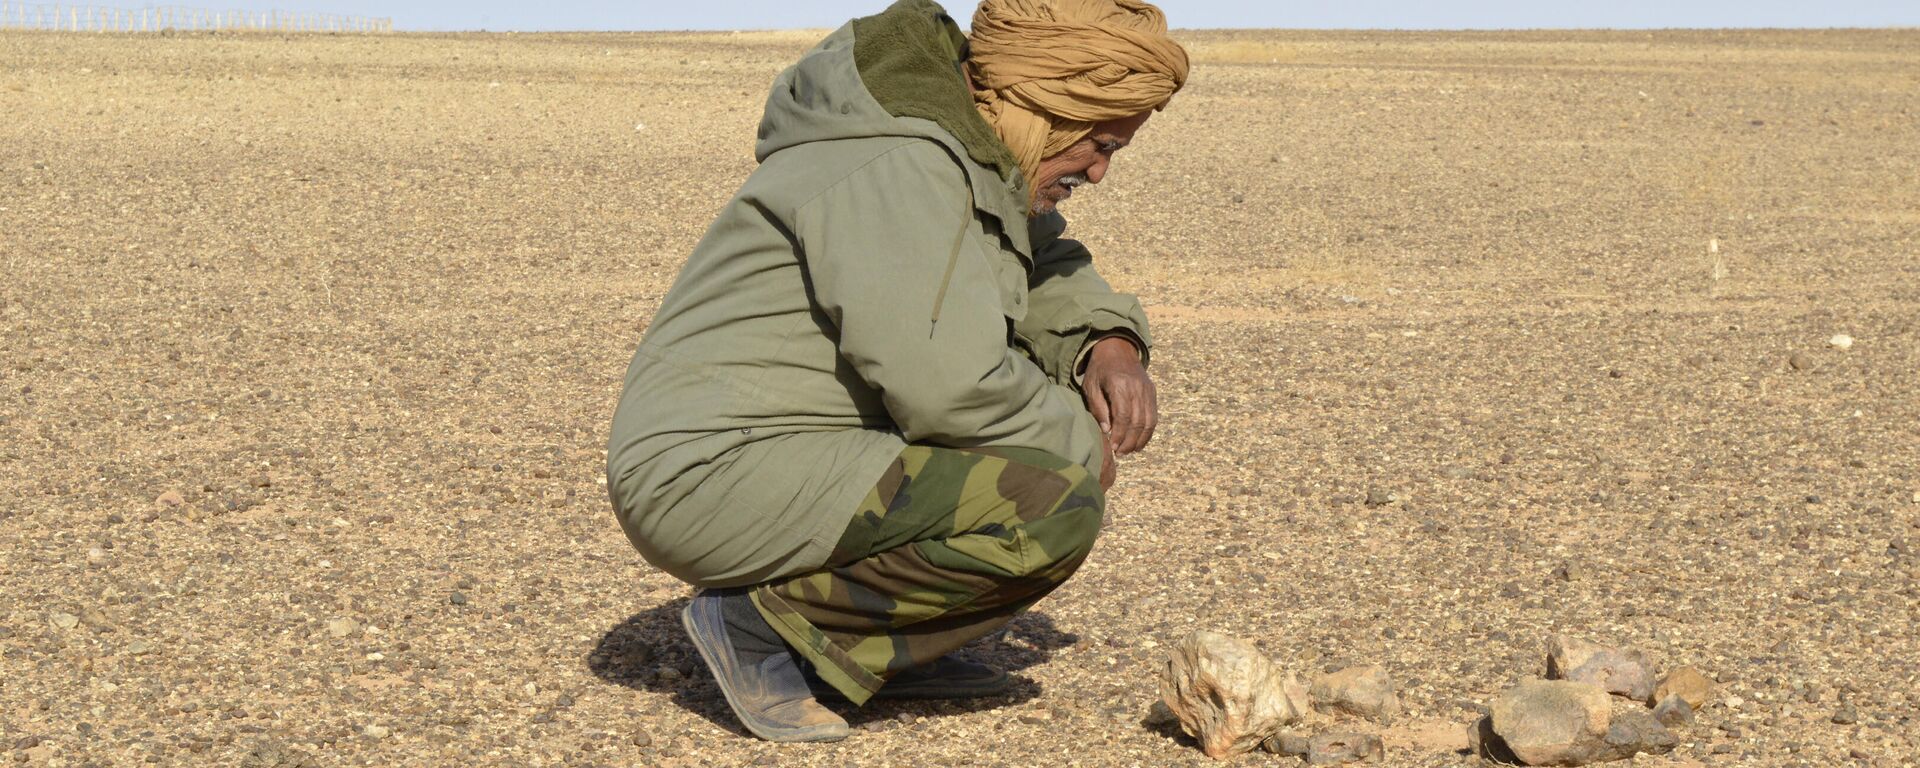 Un vigilante de seguridad mirando una mina antipersonal en el Sáhara Occidental - Sputnik Mundo, 1920, 08.12.2021